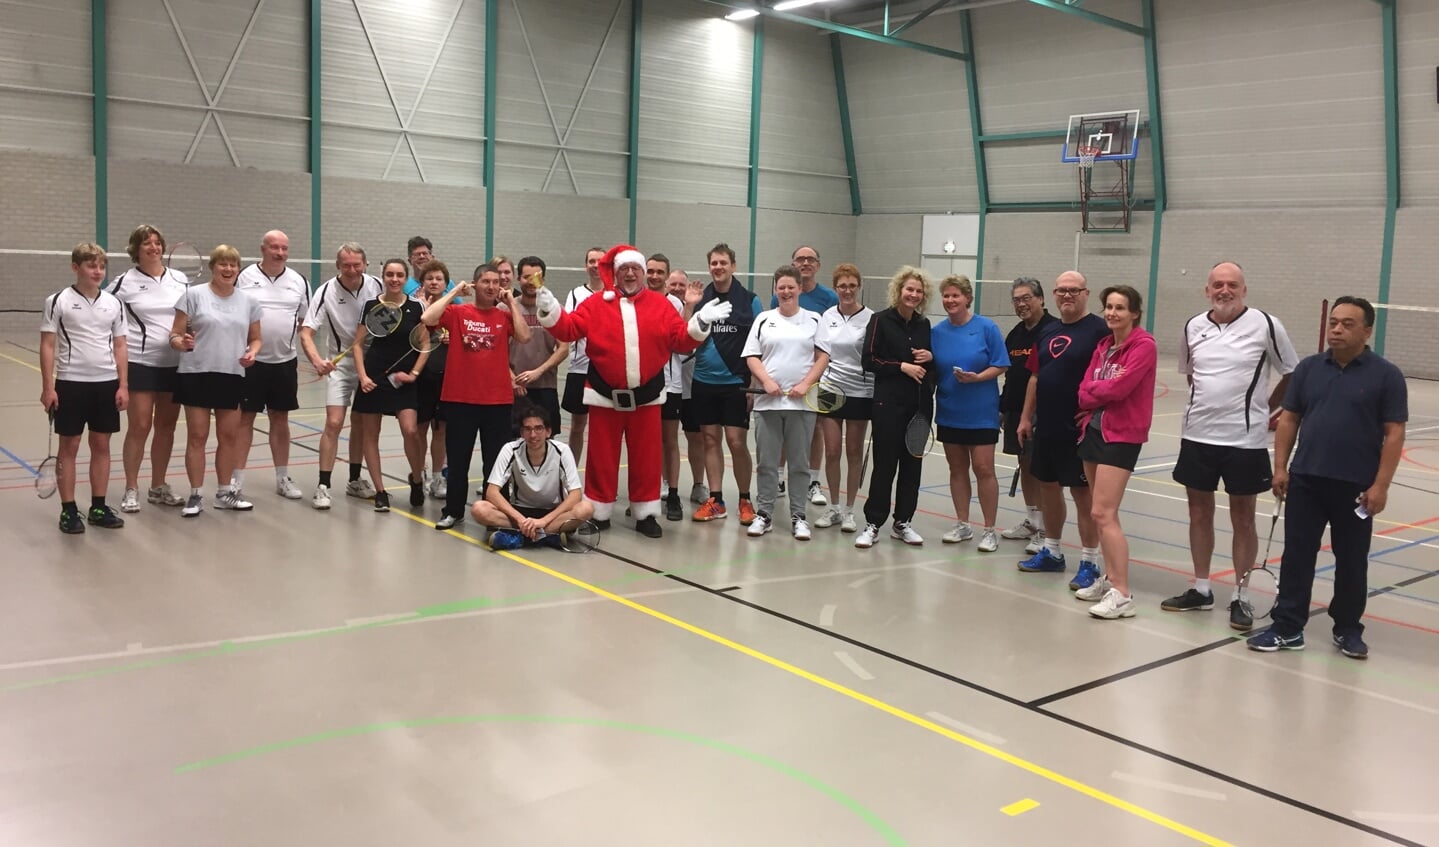 Kerstman Frans Biemans (in Kerstmanpak, midden) tussen de senioren van Badminton Club Lieshout